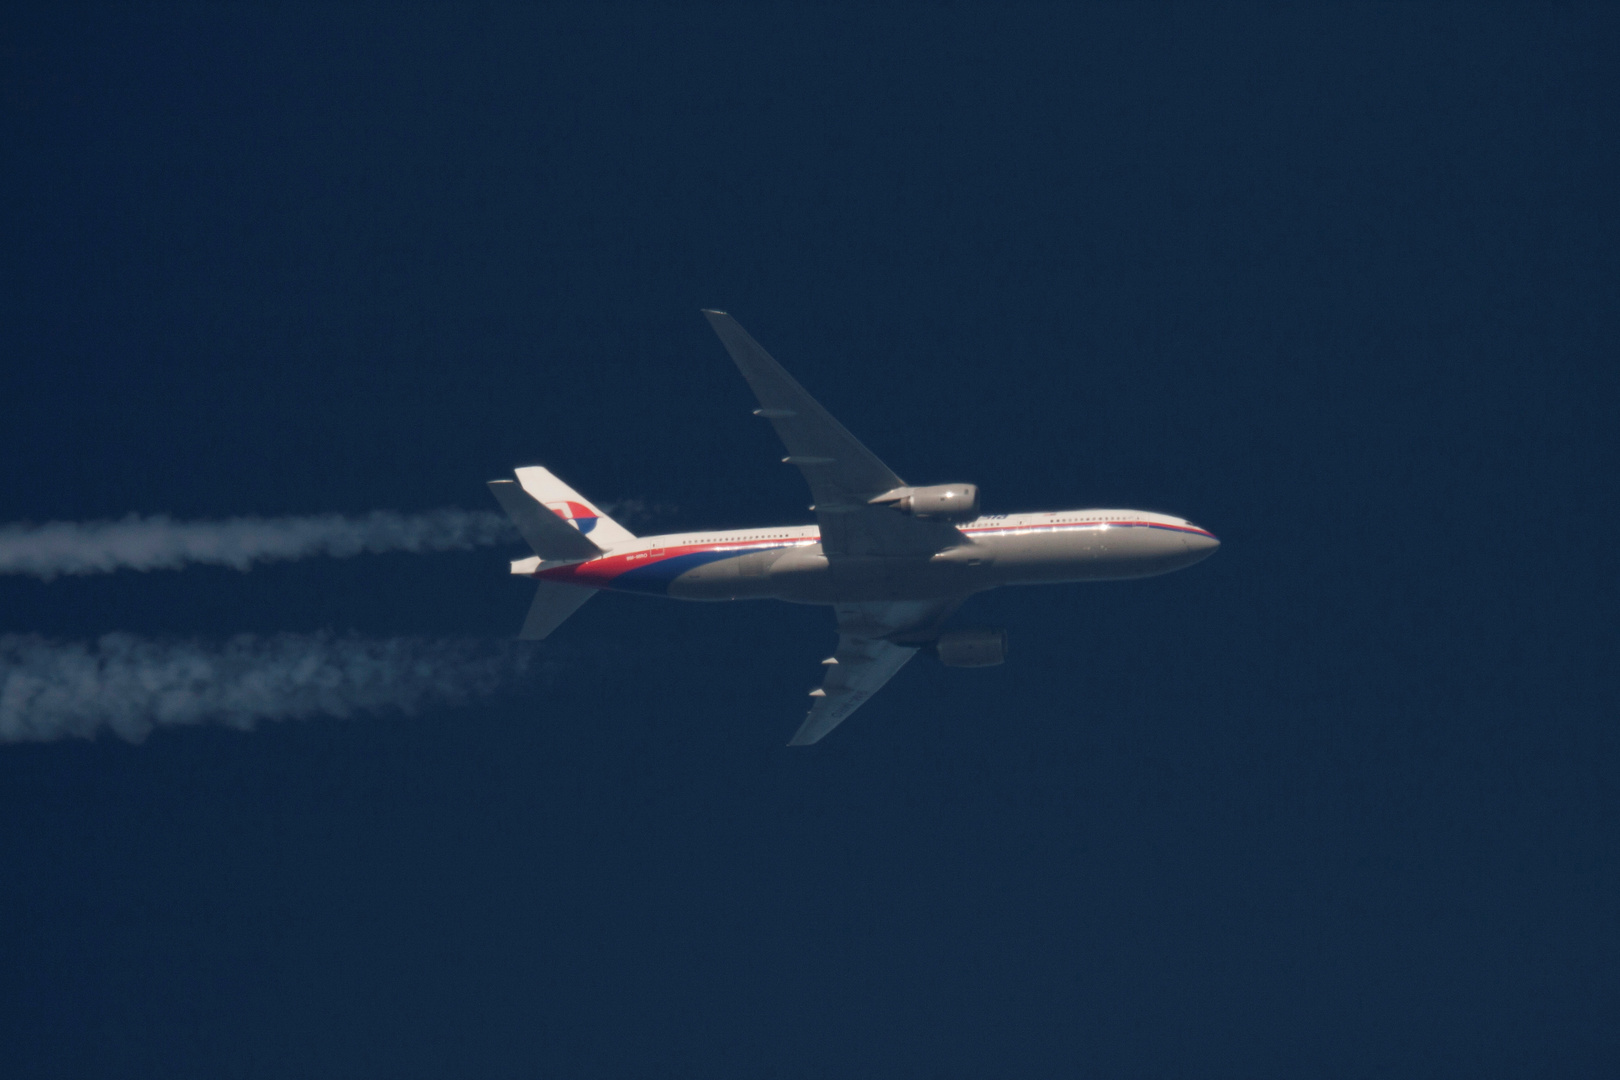 بعد 7 سنوات من اختفائها الغامض .. حطام جديد قد يدفع إلى إعادة البحث عن الطائرة المنكوبة MH370